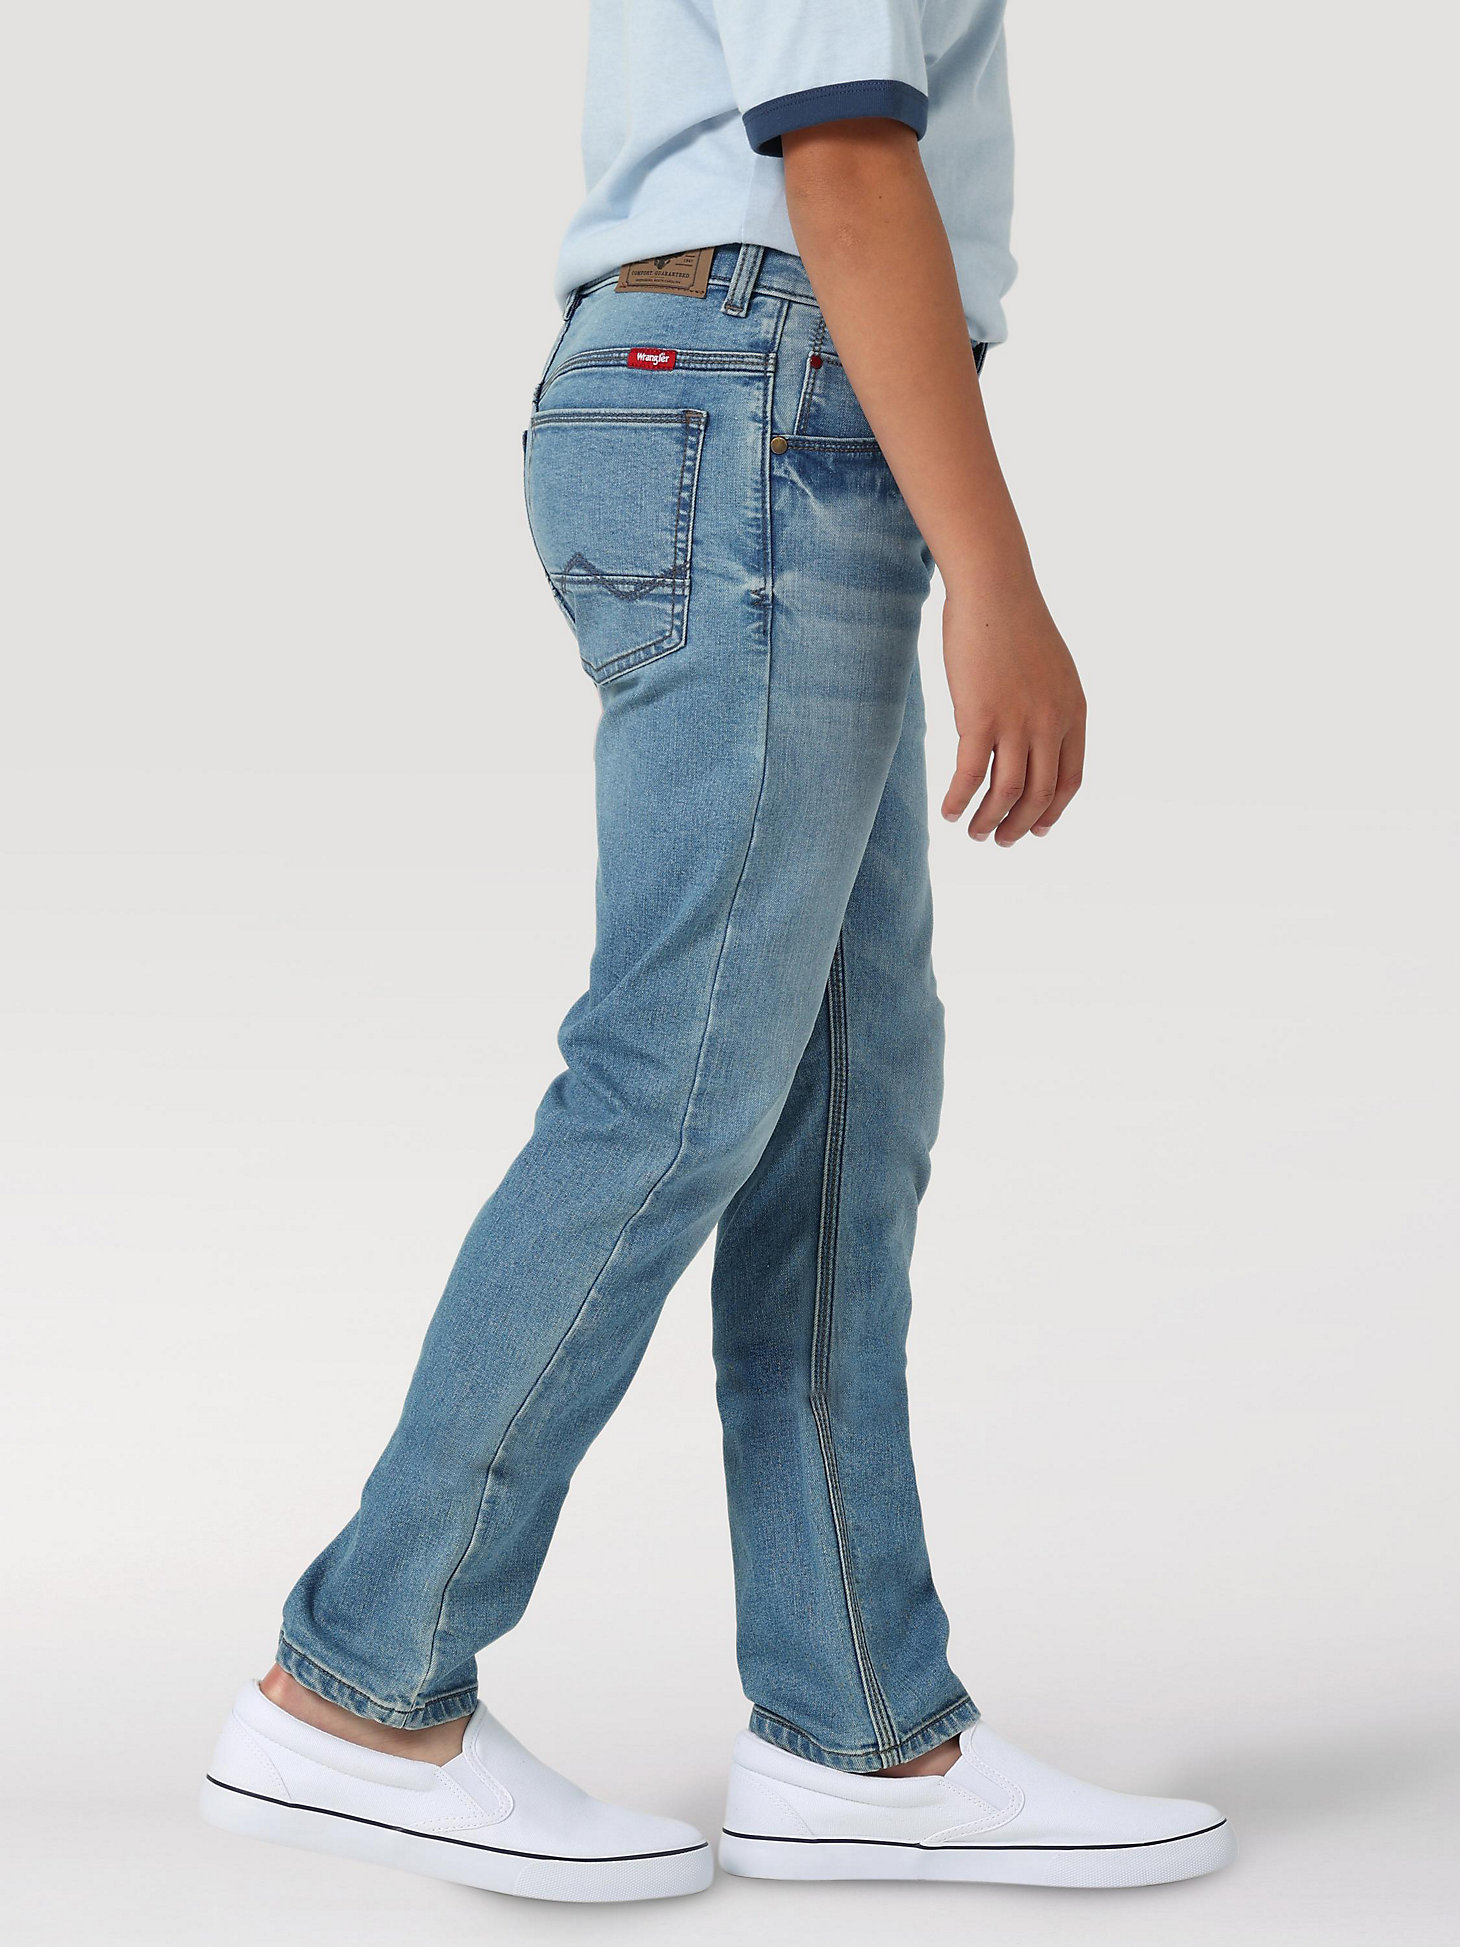 Boy's Indigood Slim Fit Jean (4-7) in Worn Blue alternative view 3